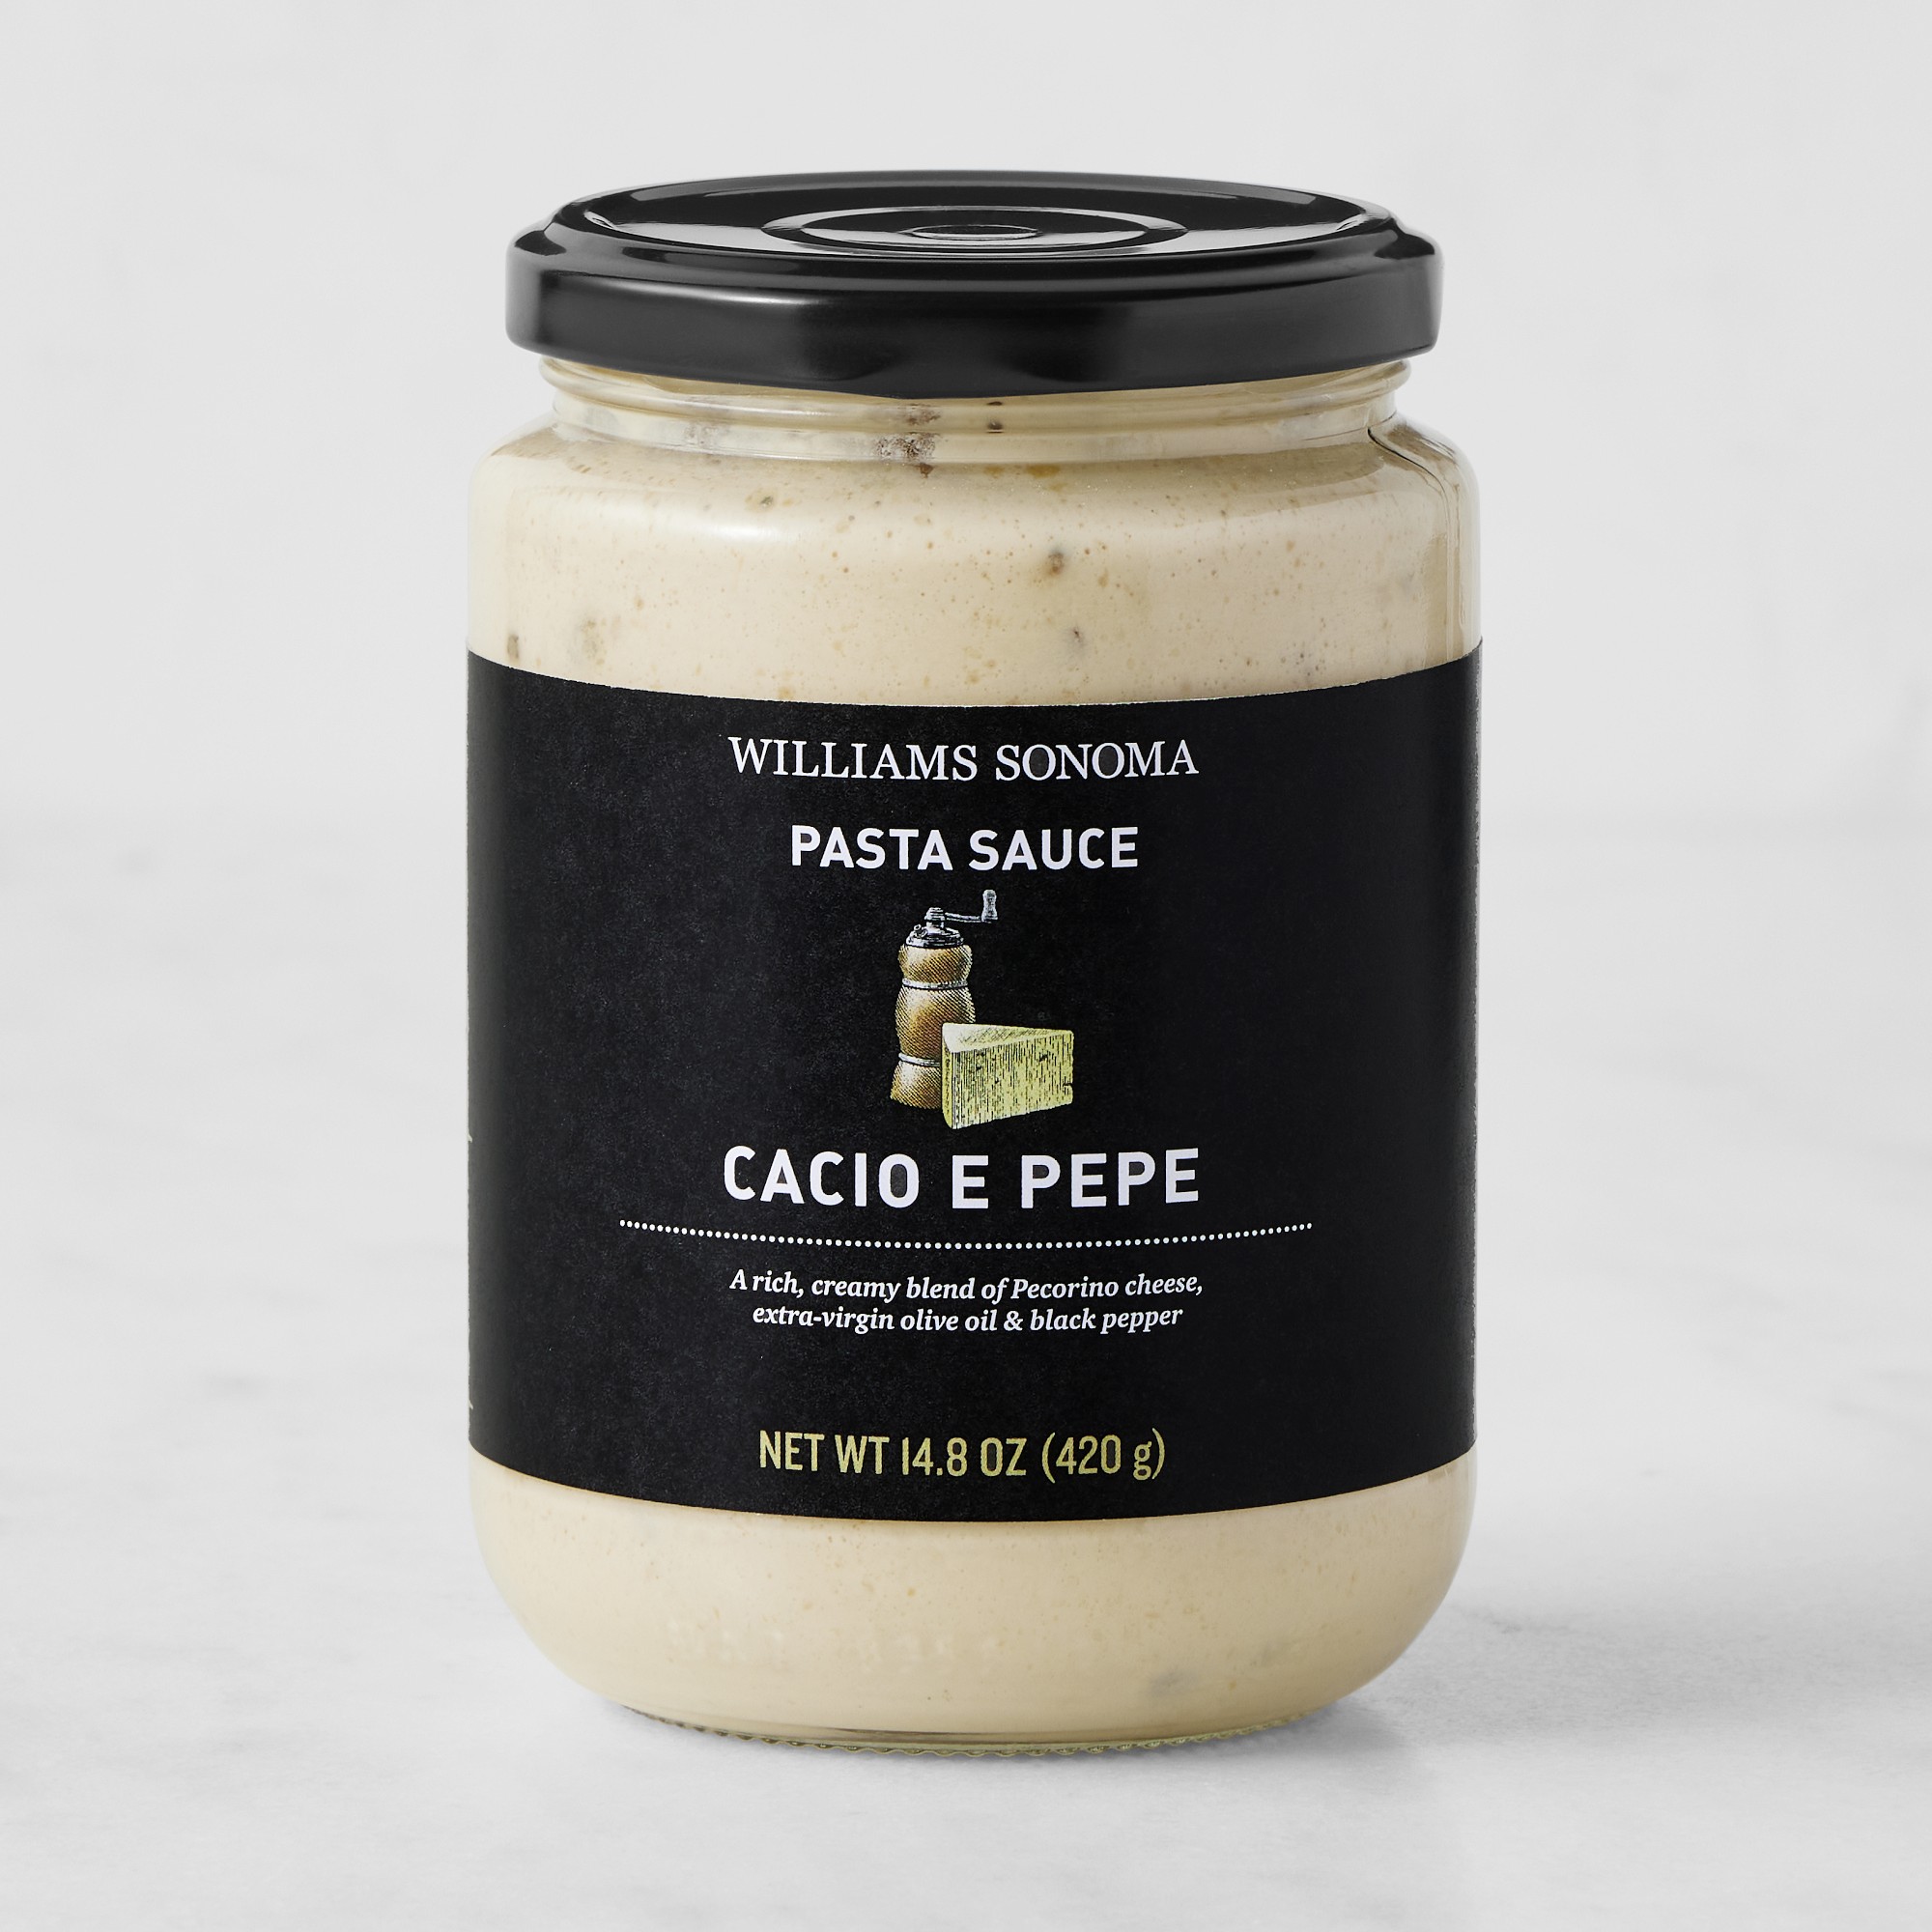 Williams Sonoma Pasta Sauce, Cacio e Pepe